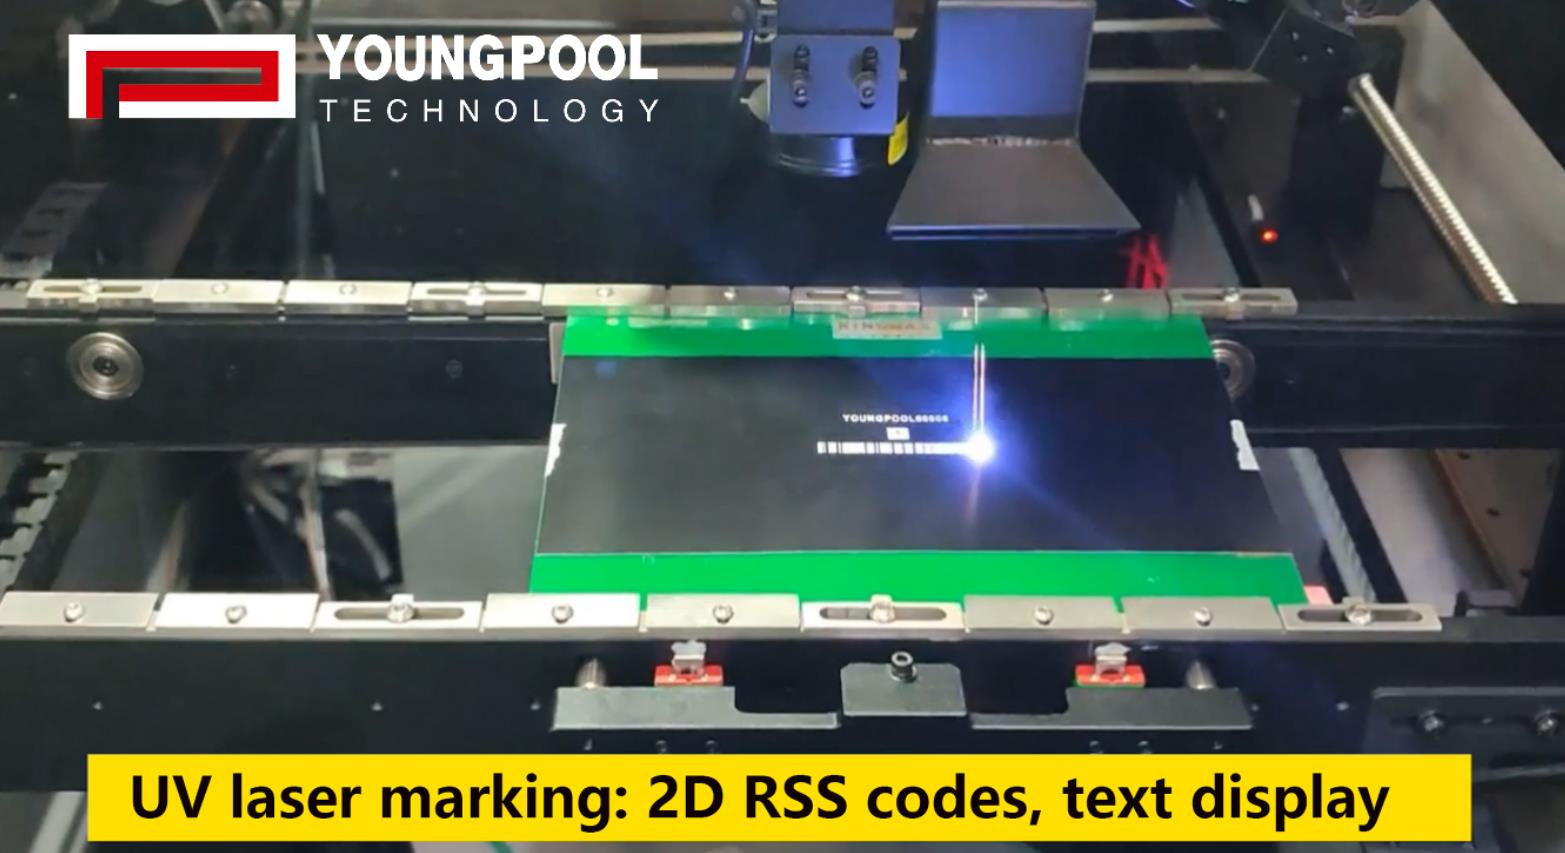 Une marque de téléphones mobiles fabrique pour acheter 10 ensembles de machines de marquage laser à technologie youngpool
